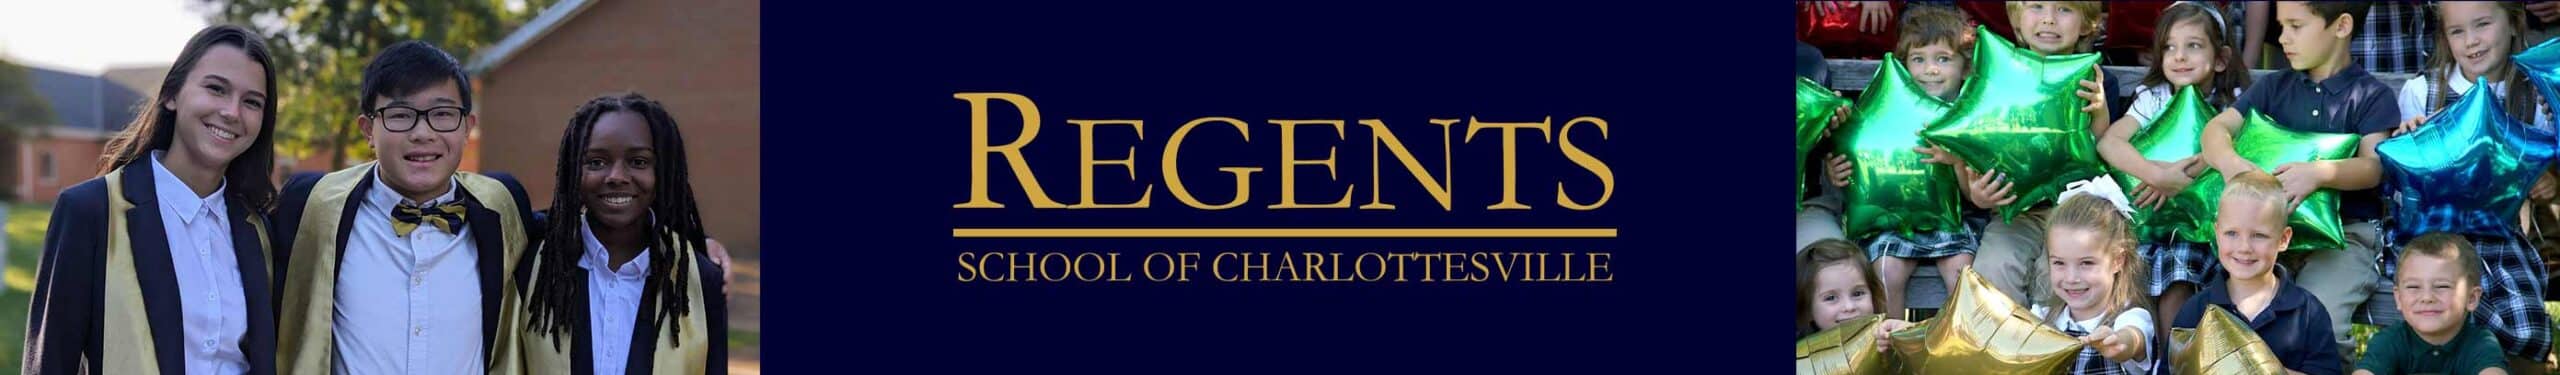 Regents School banner